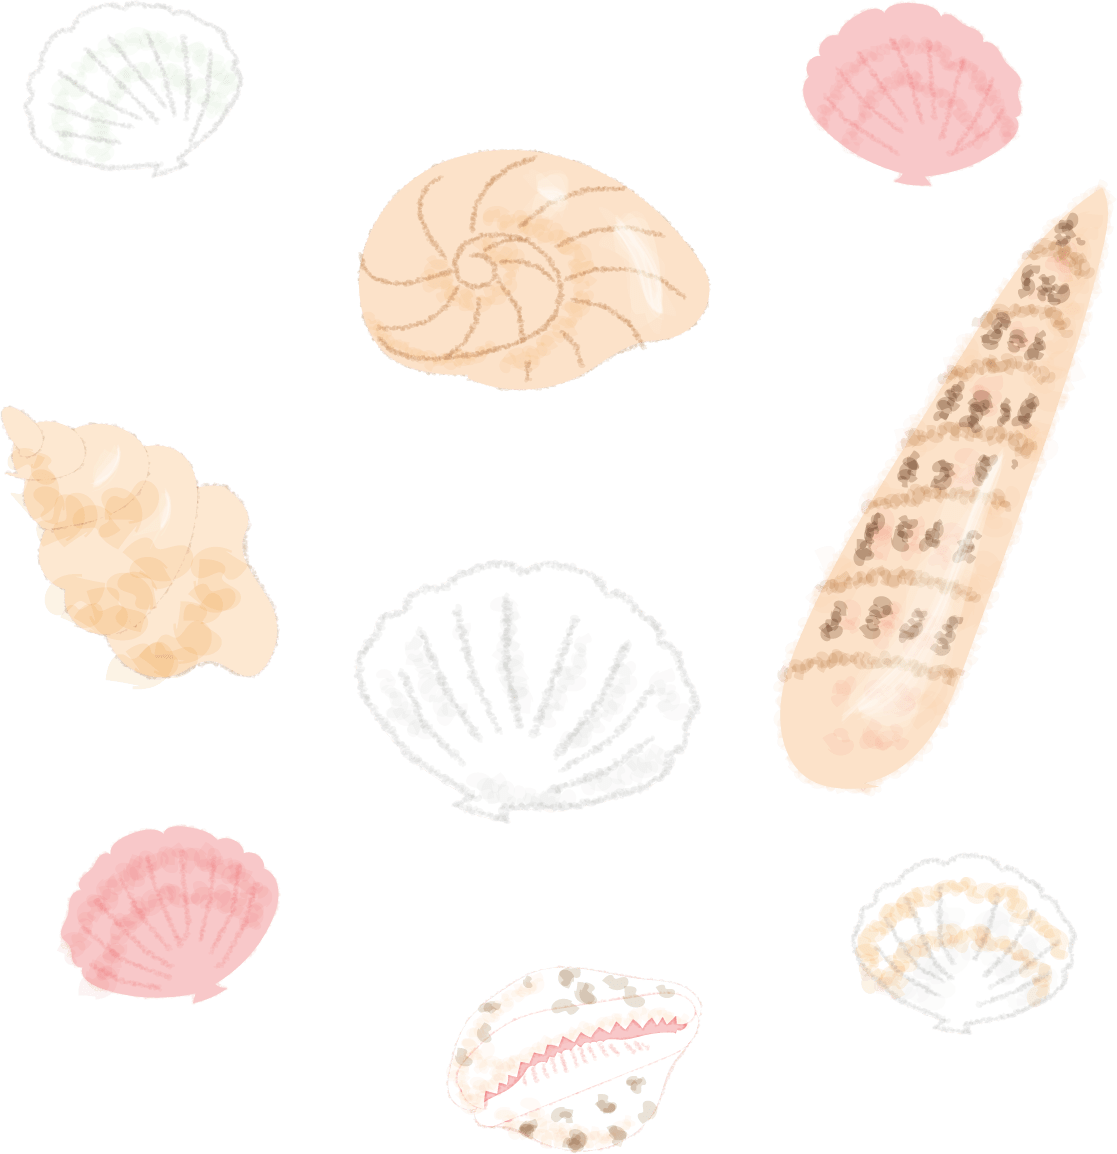 貝殻いろいろ 海 イラスト素材 超多くの無料かわいいイラスト素材